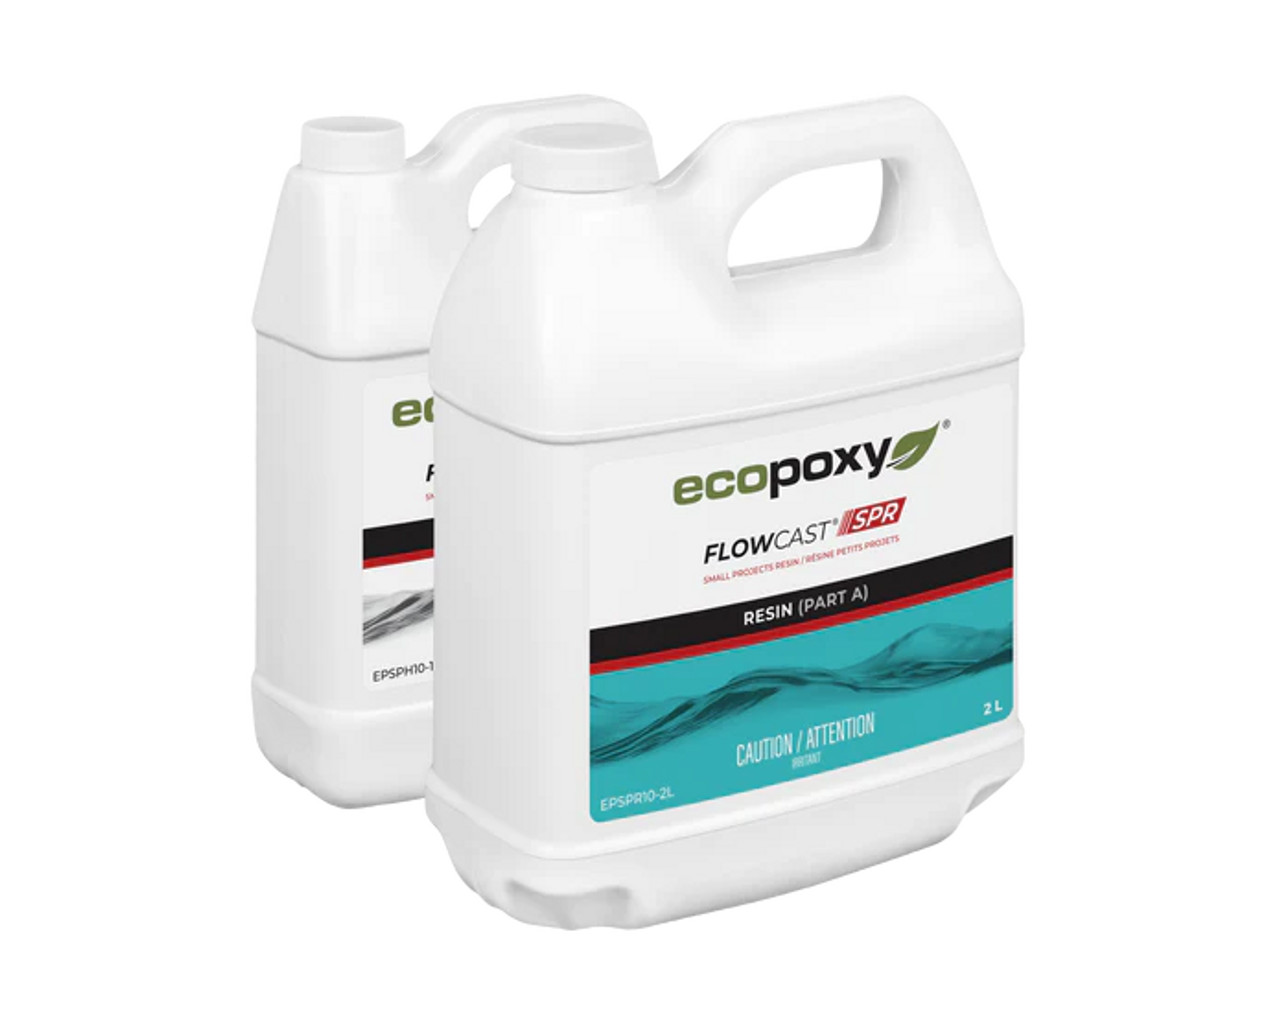 Ecopoxy Flowcast SPR 3L